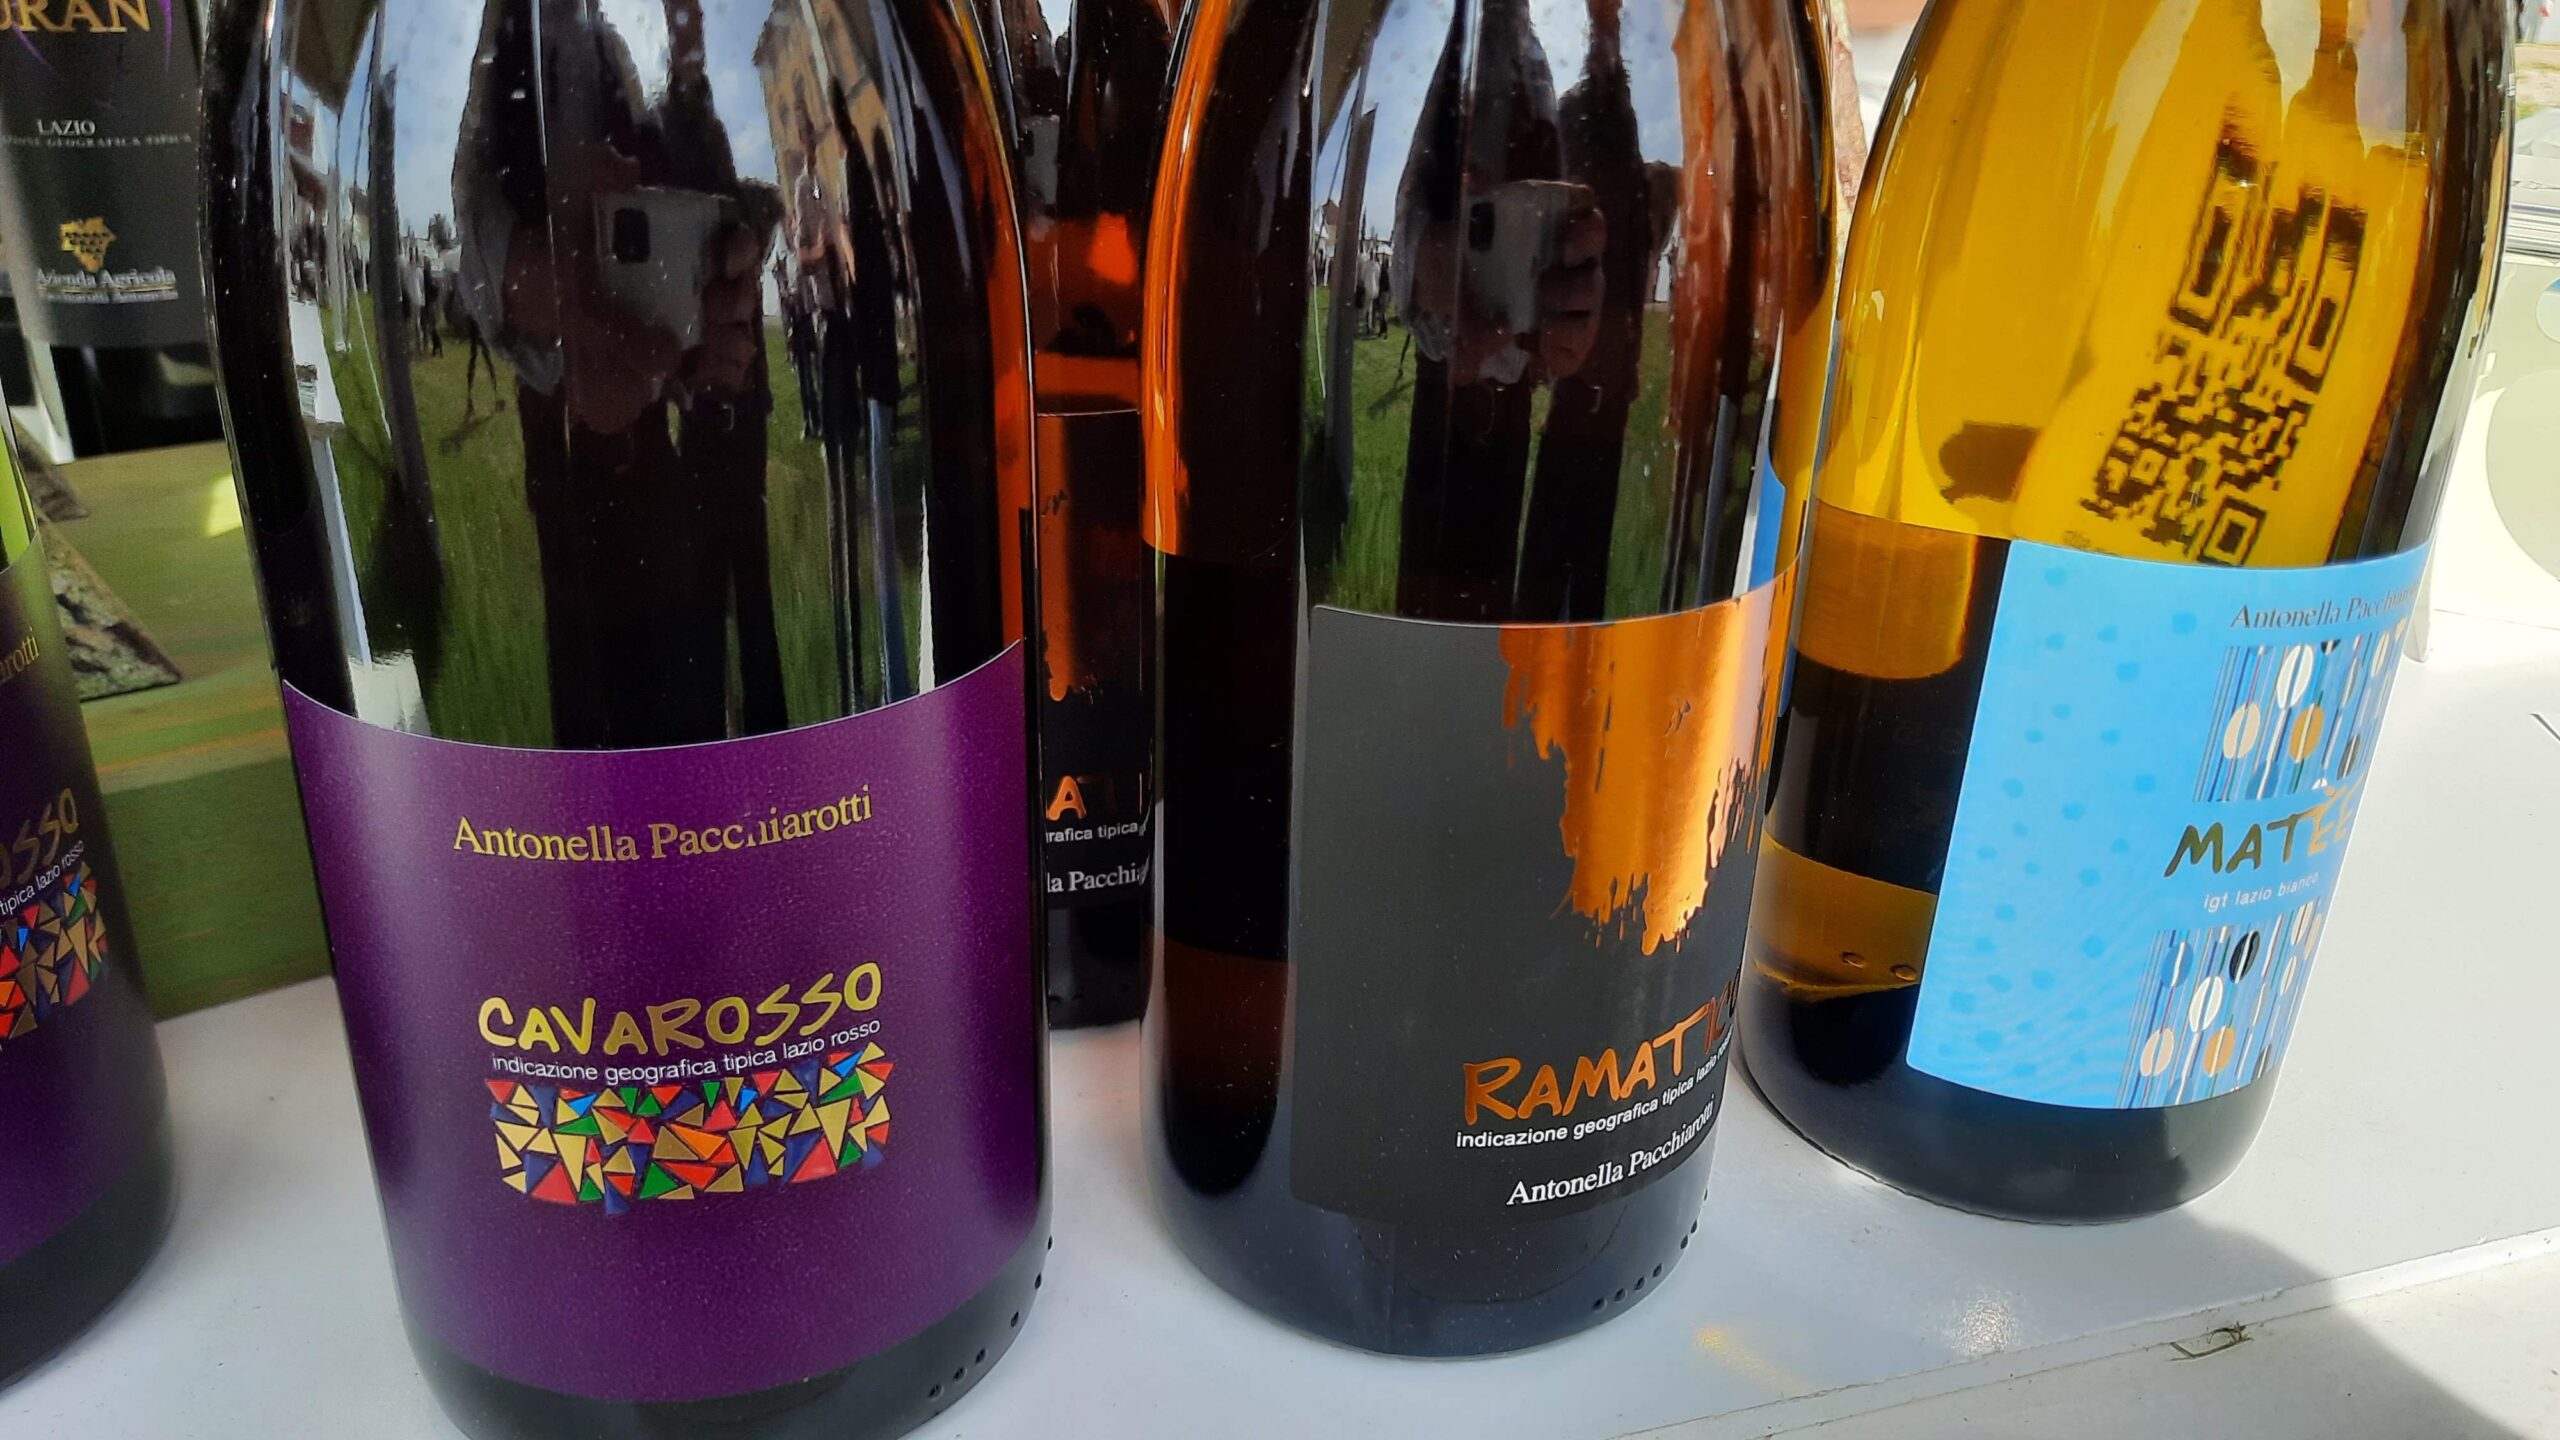 Ramatico Igt Lazio 2020 Az. Antonella Pacchiarotti, Only Wine festival 2023, foto di Adriano Guerri